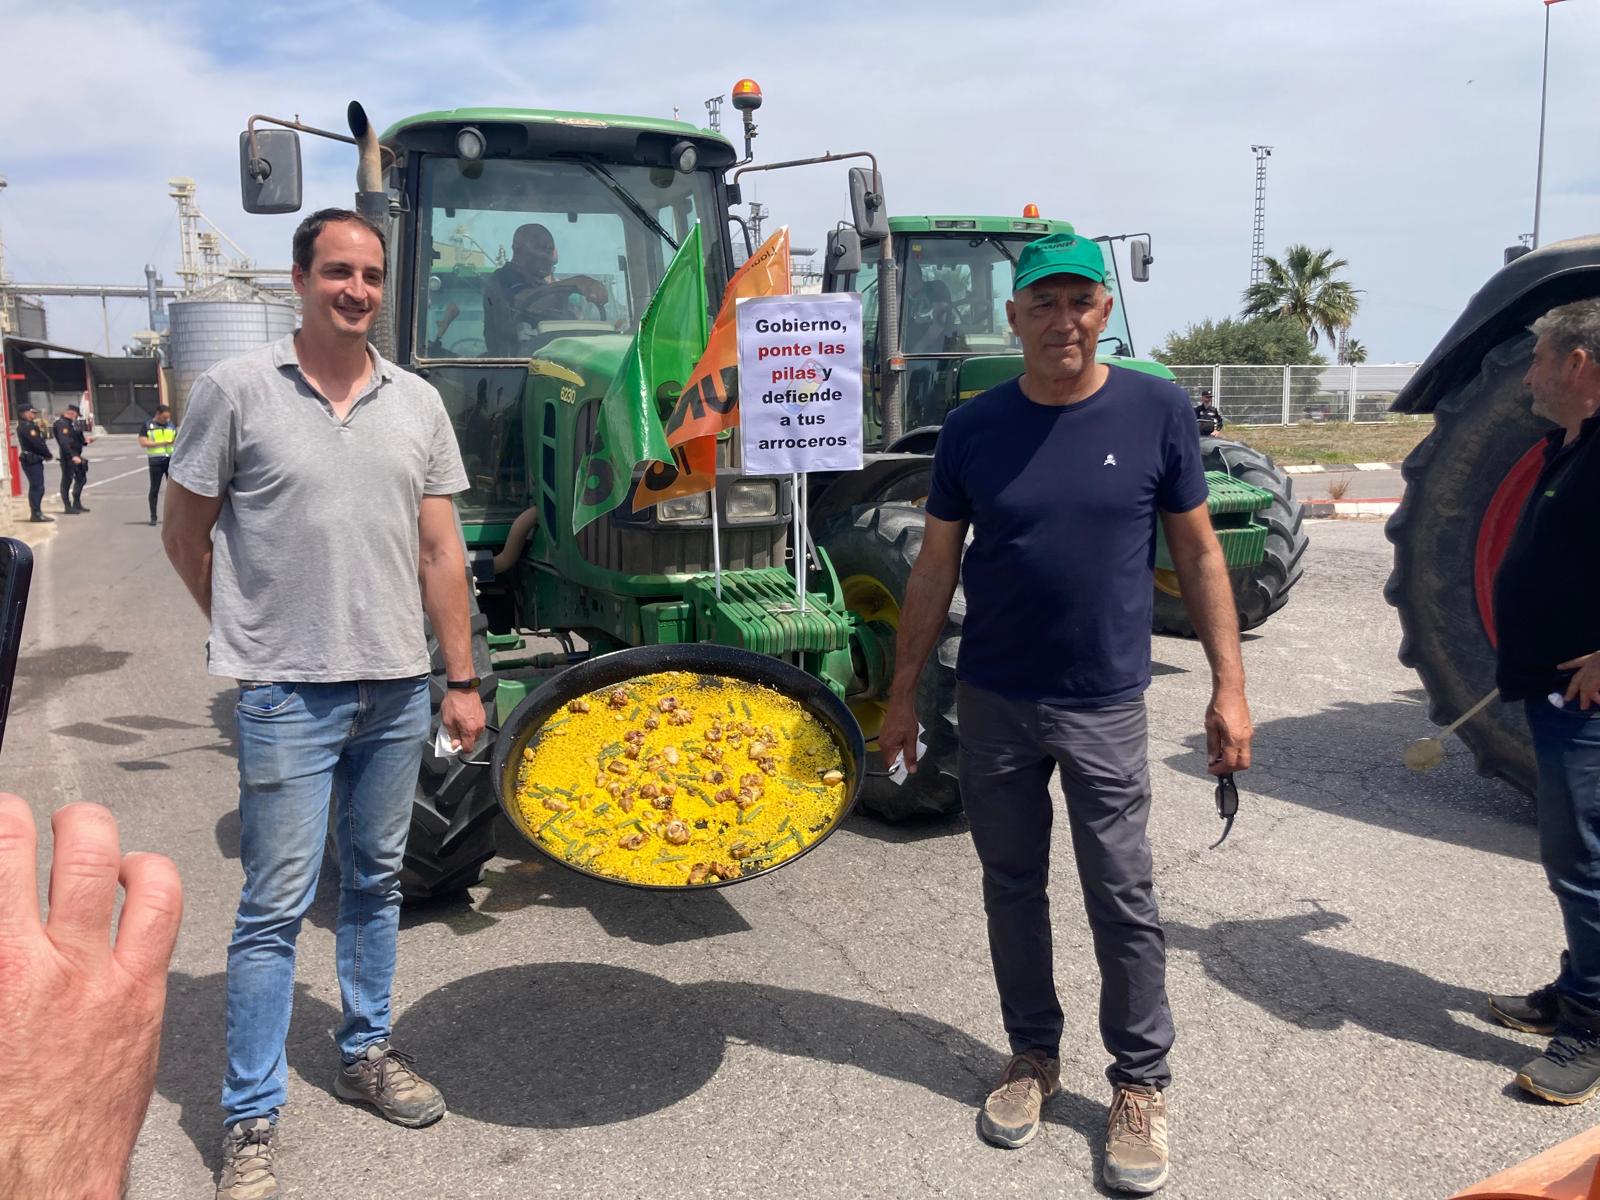 30 tractores y una paella para protestar por el aumento de importaciones de arroz del sudeste asiático